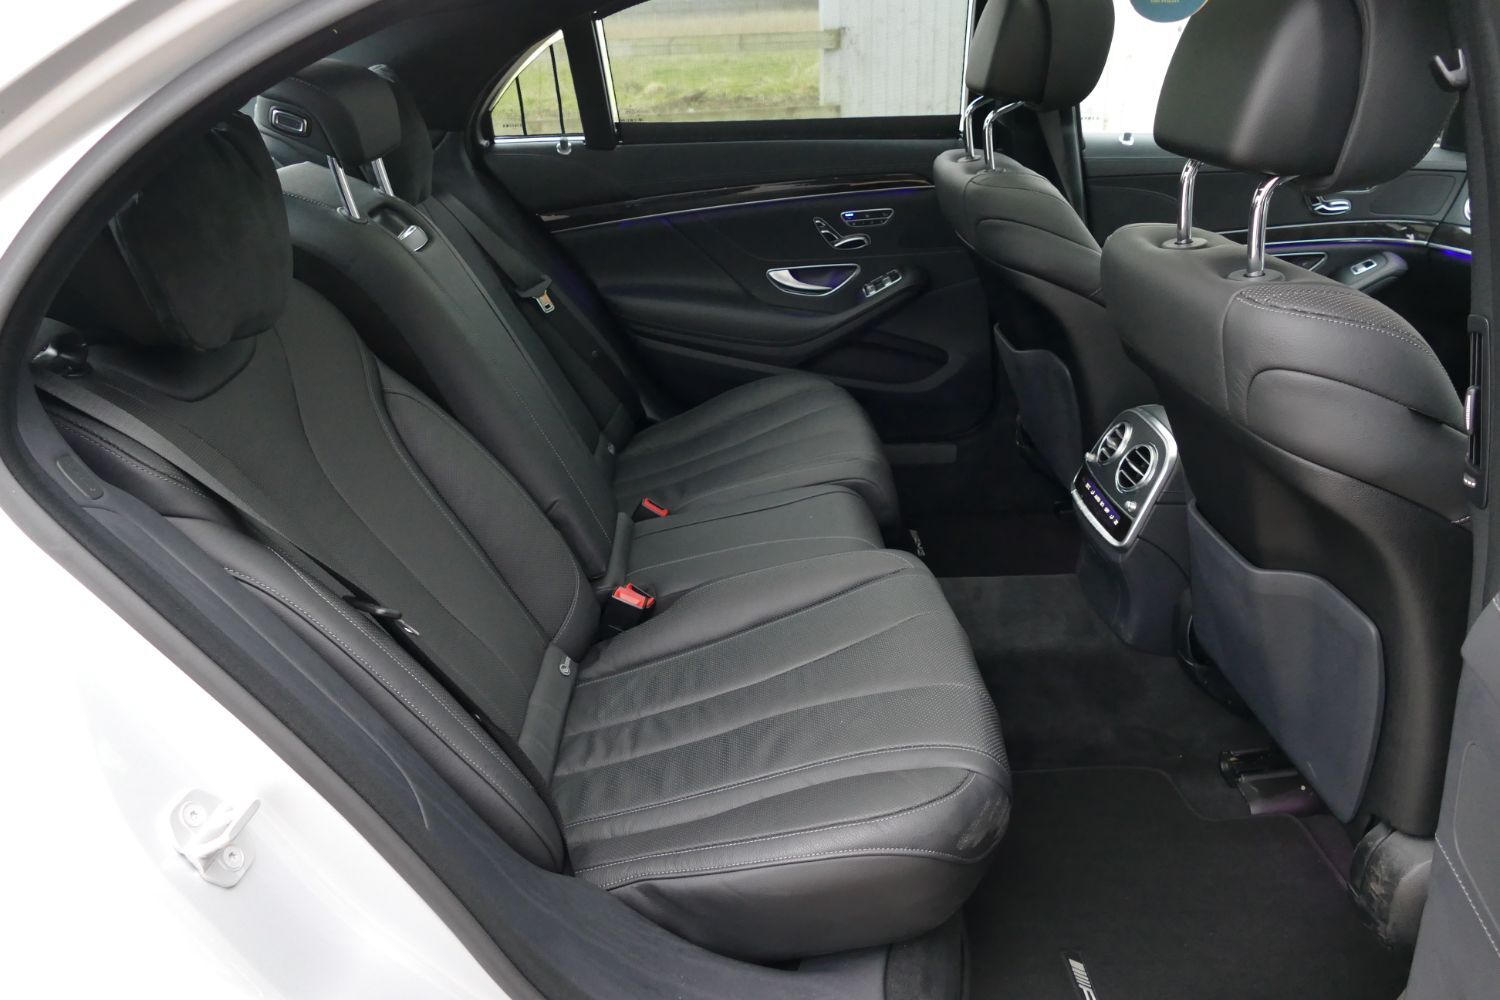 Mercedes-Benz S 350 interior - Seats